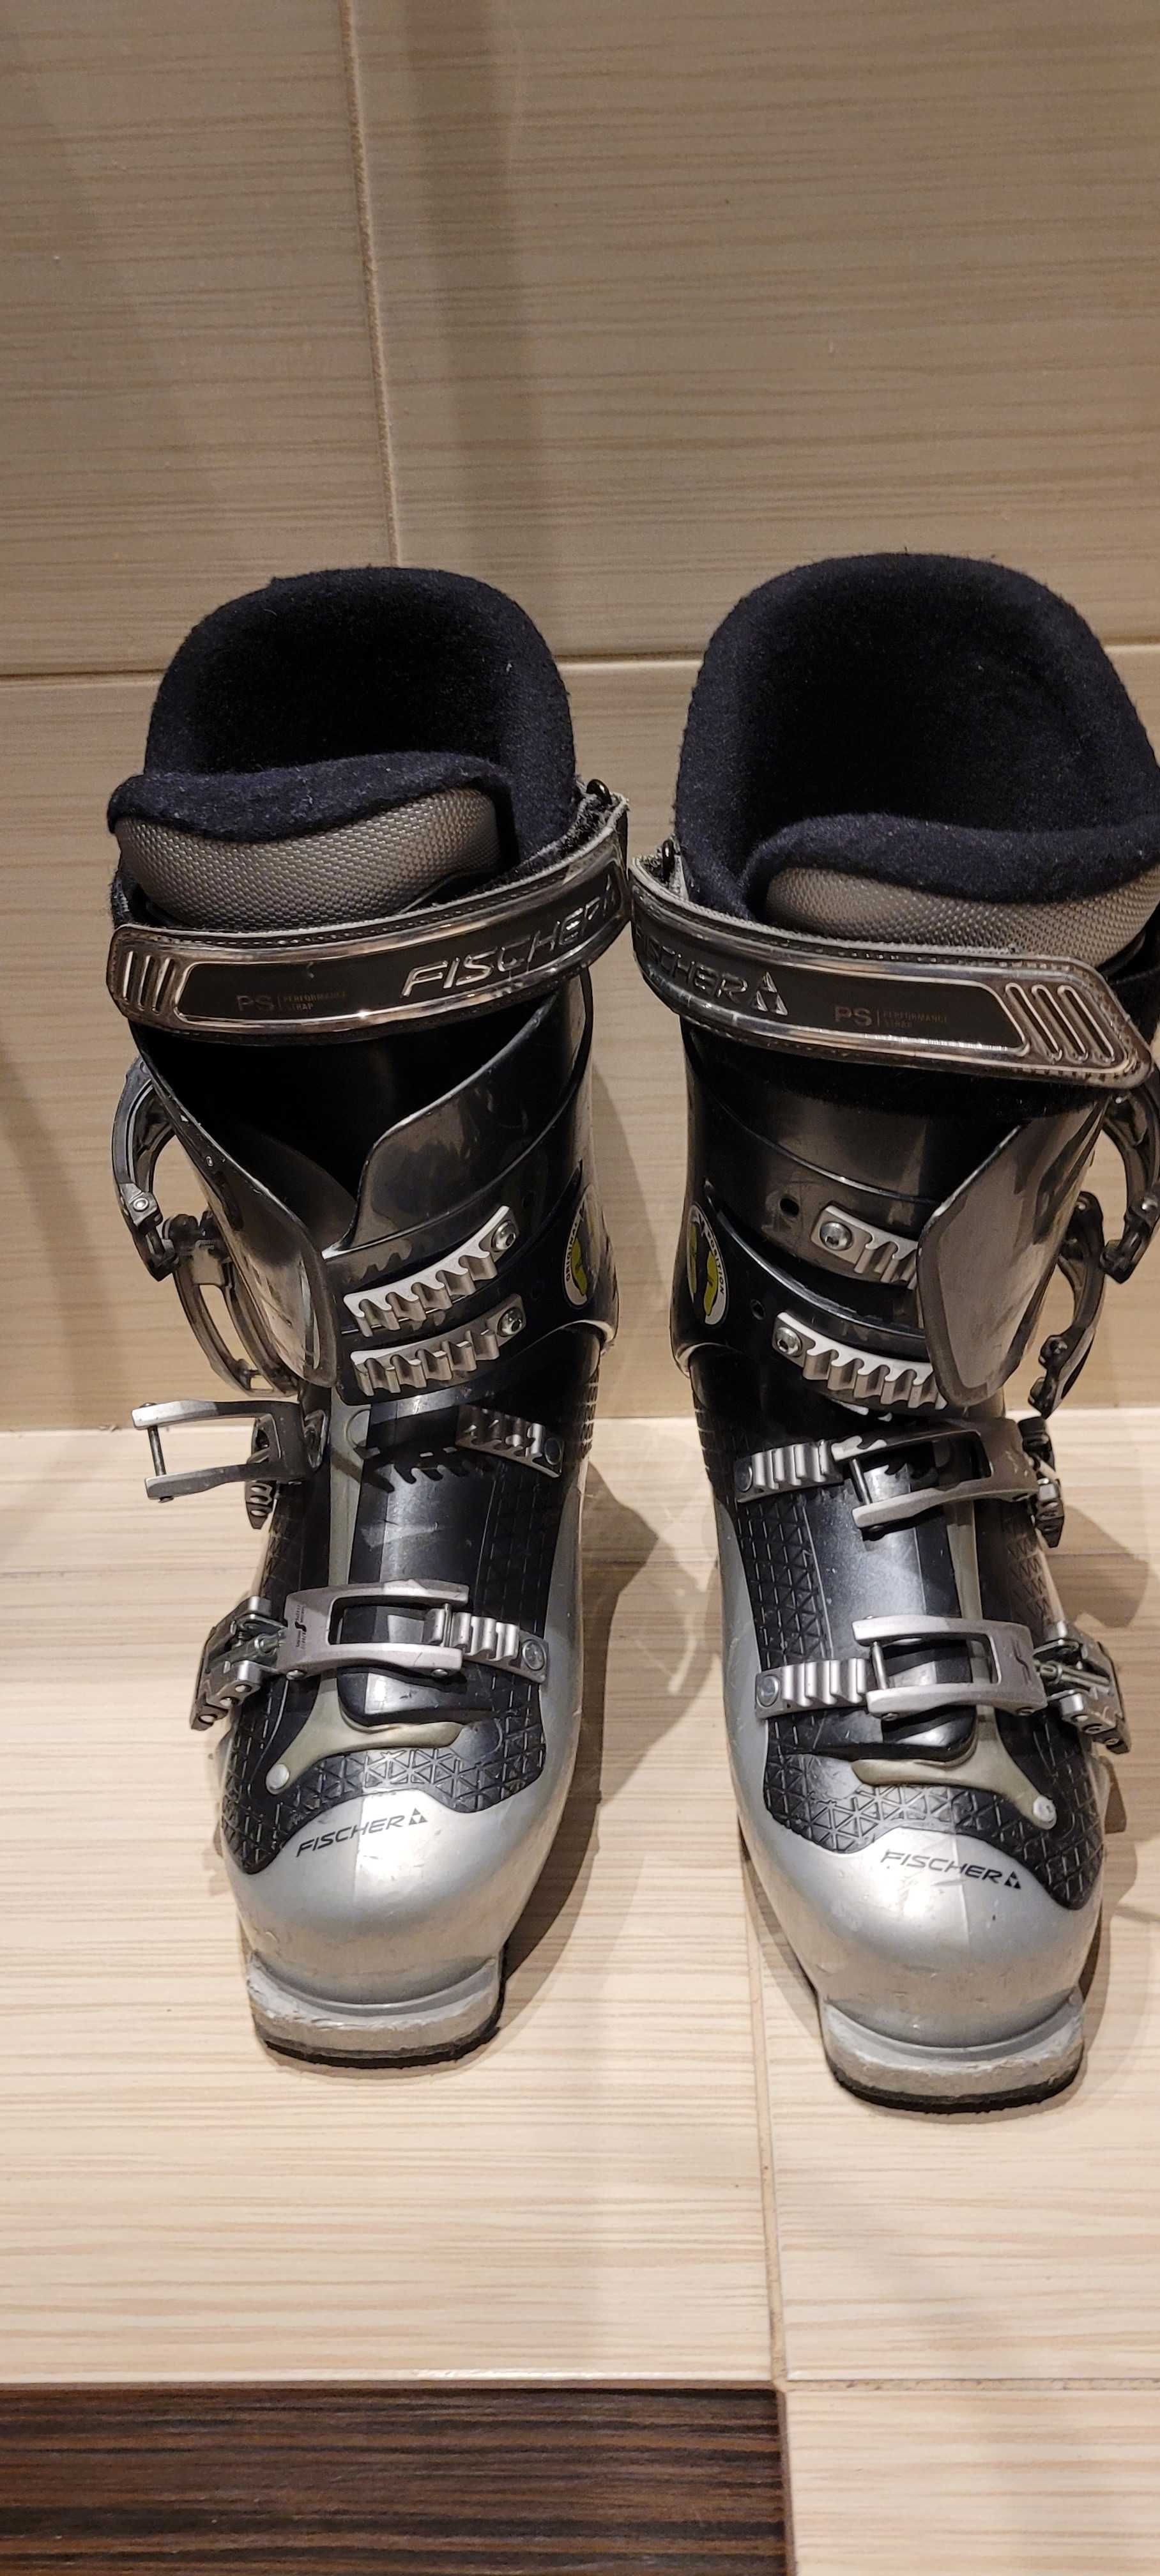 buty narciarskie firmy FISCHER rozmiar 26,5